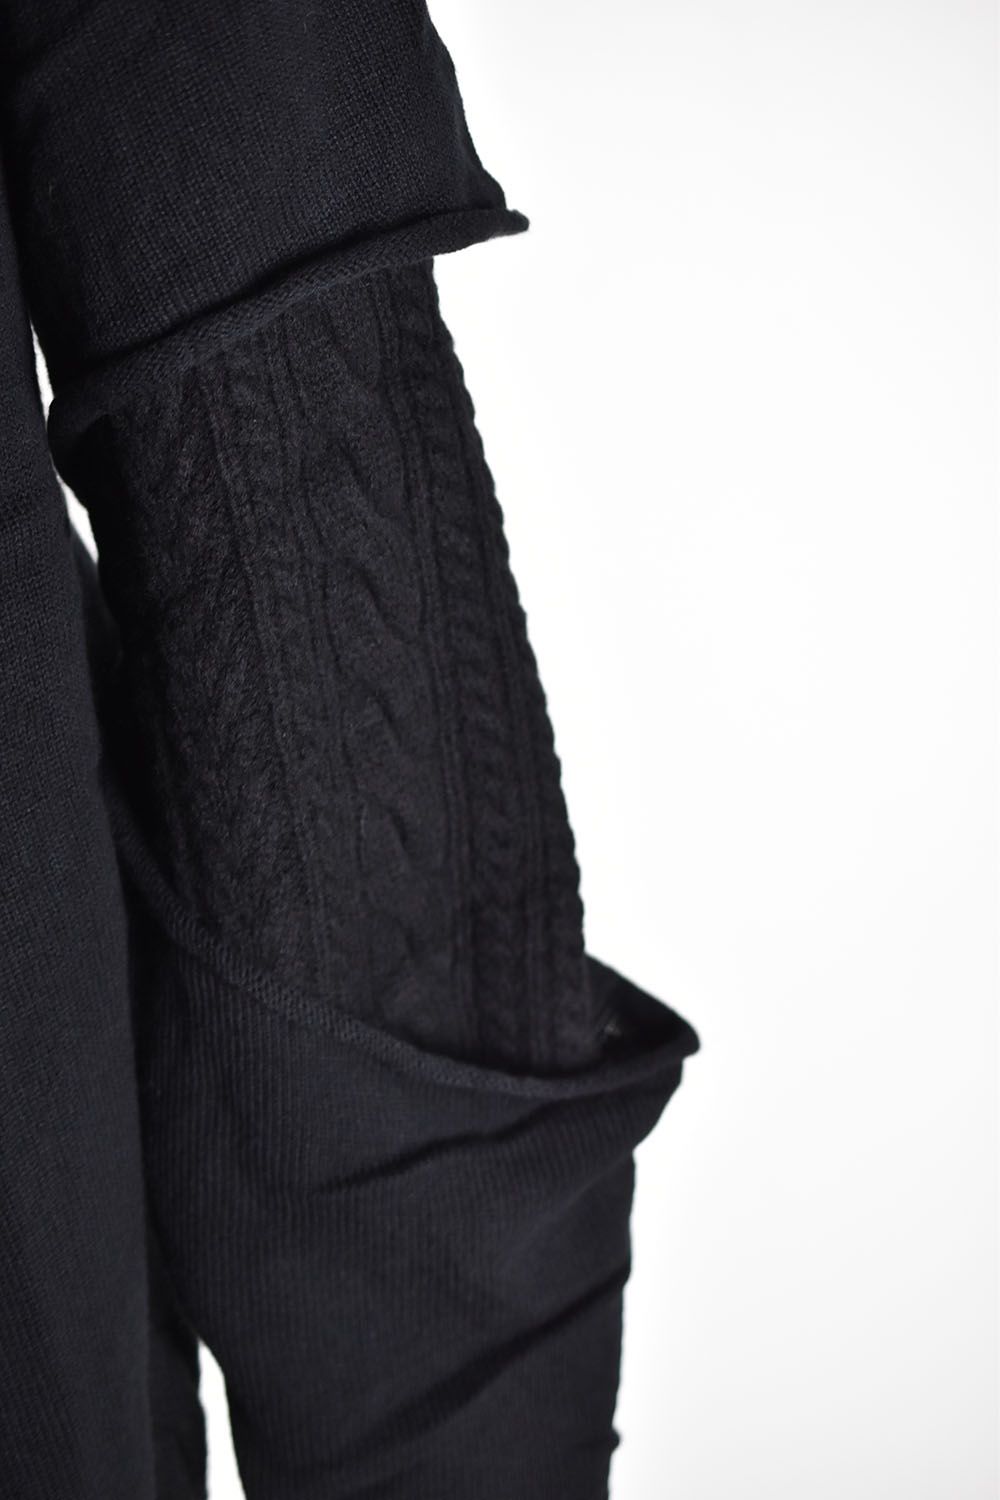 Layered Cut Out Knit Pull Over"Black"/レイヤードカットアウトニットプルオーバー"ブラック"